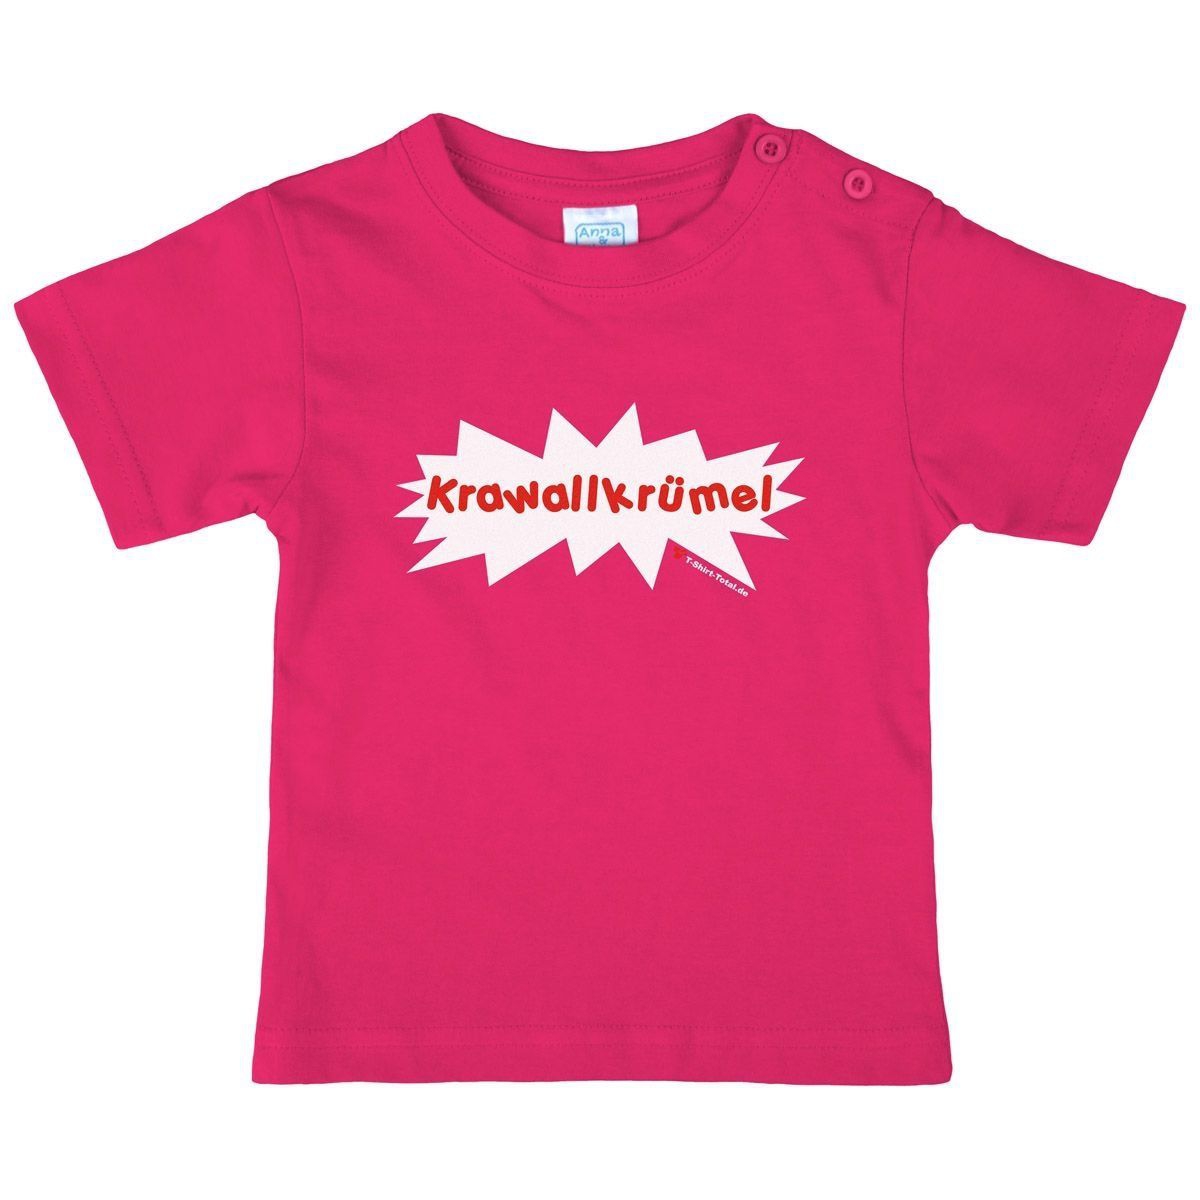 Krawallkrümel Kinder T-Shirt pink 134 / 140